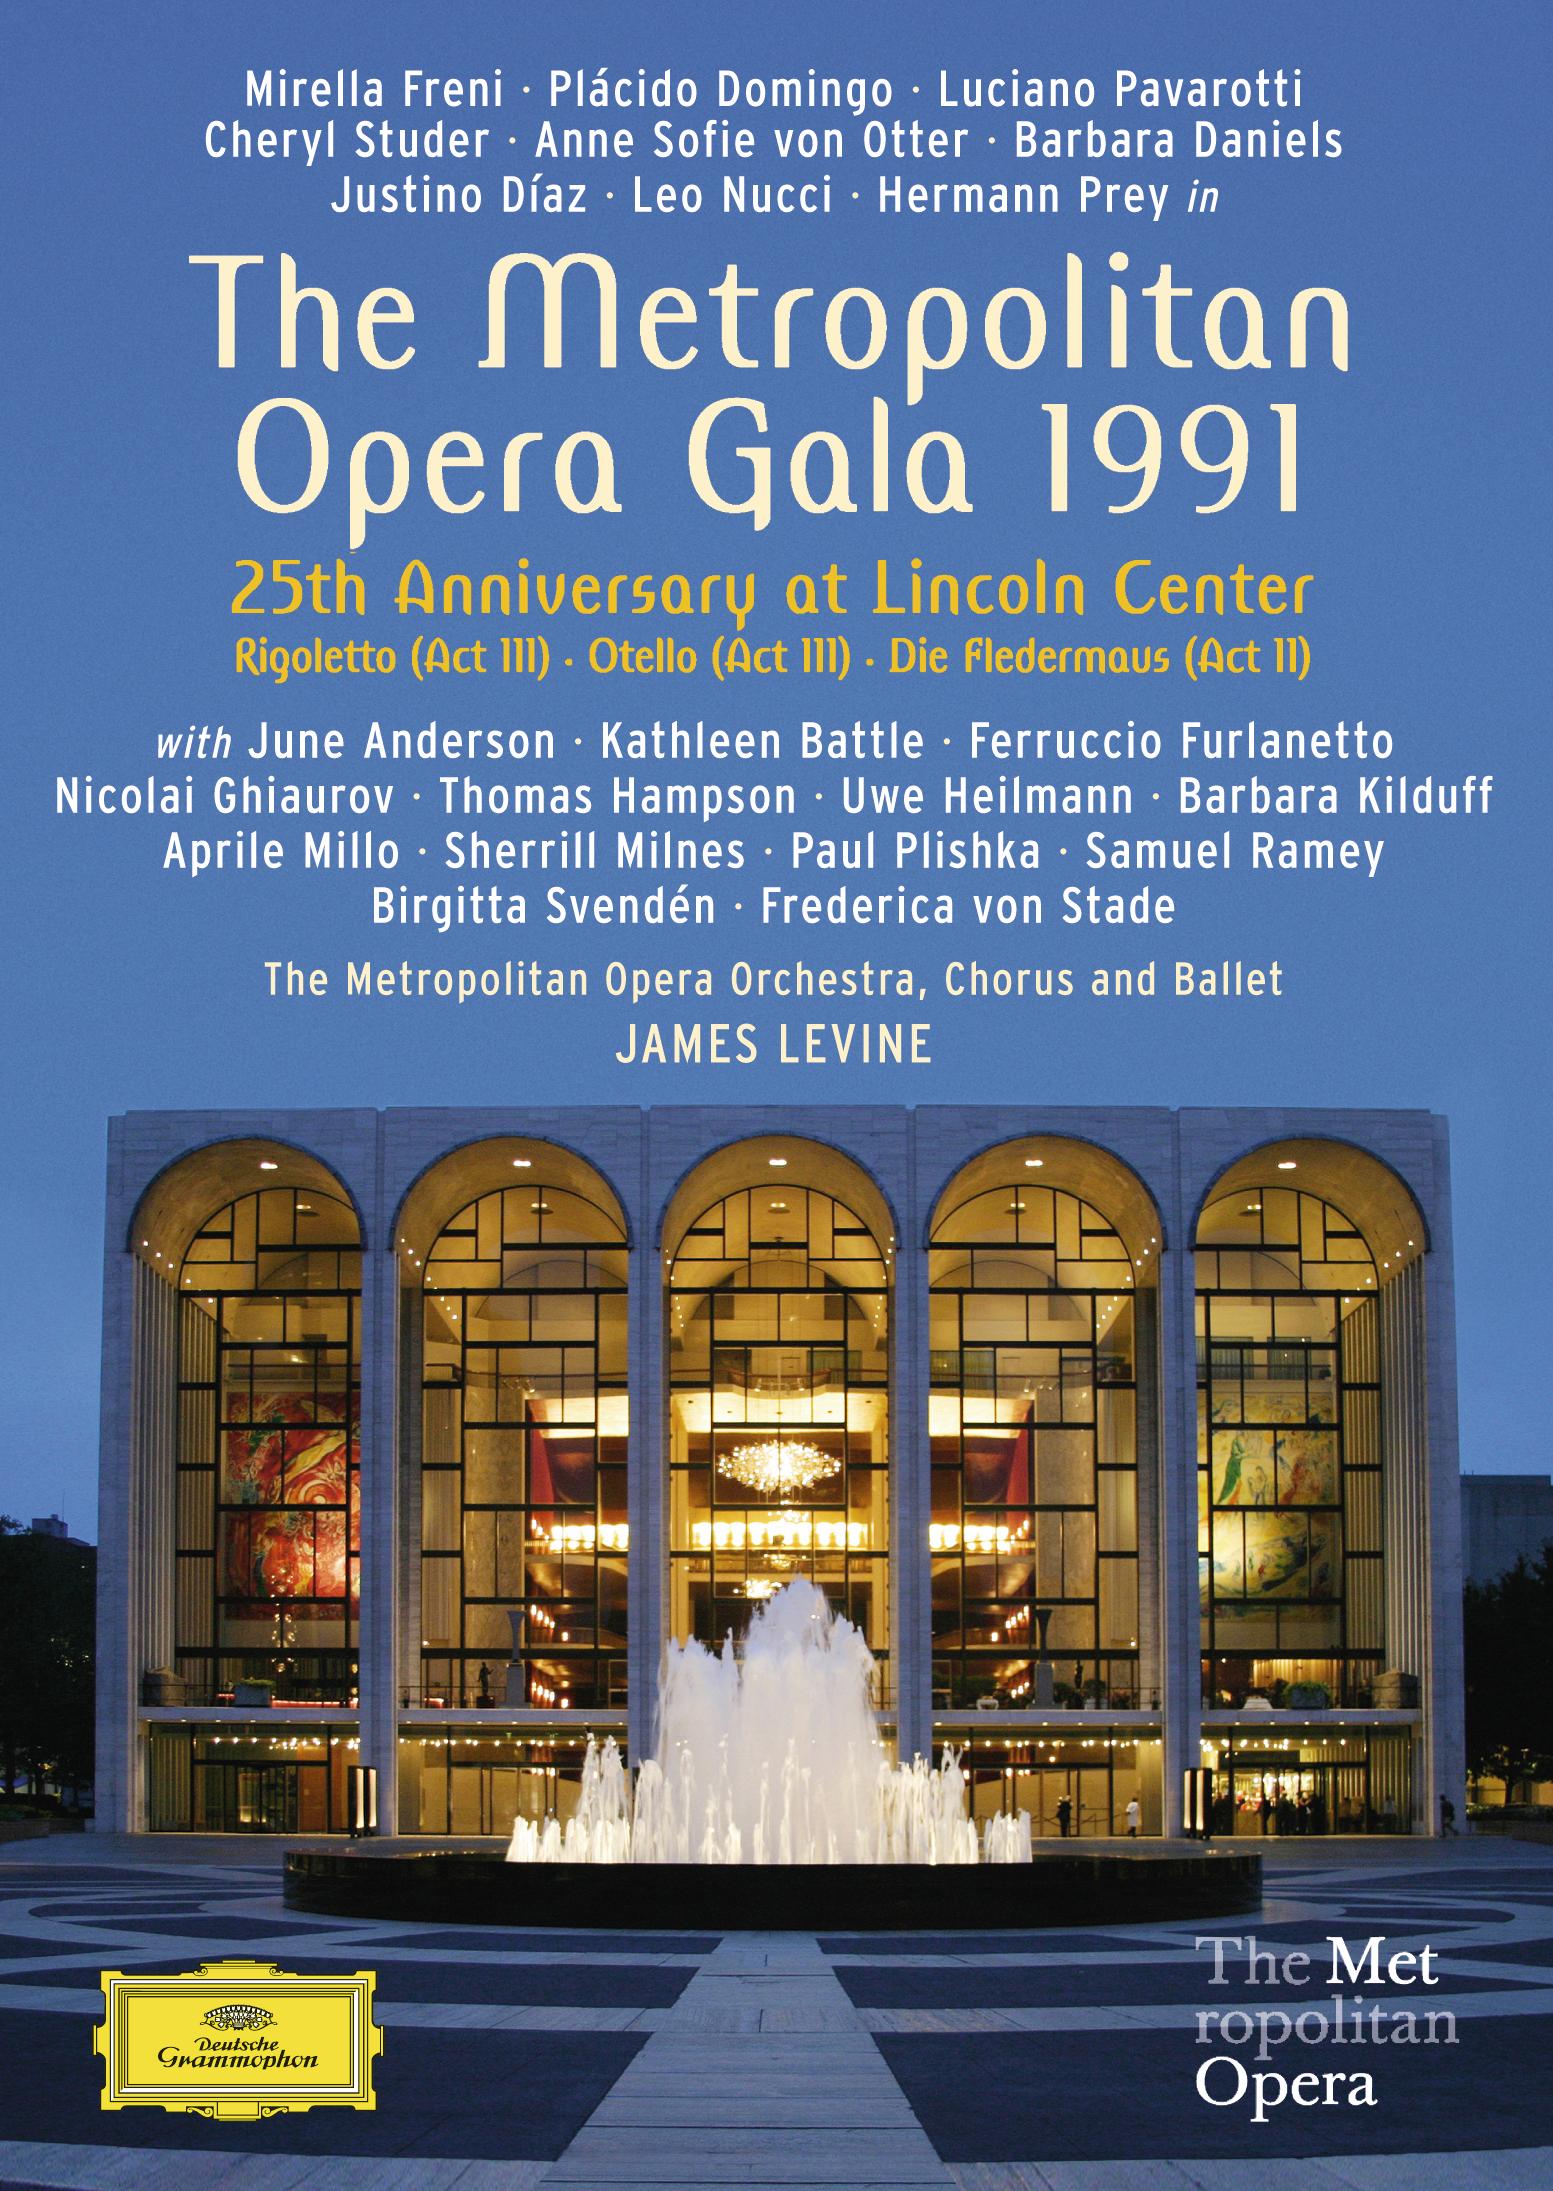 Metropolitan Opera Gala